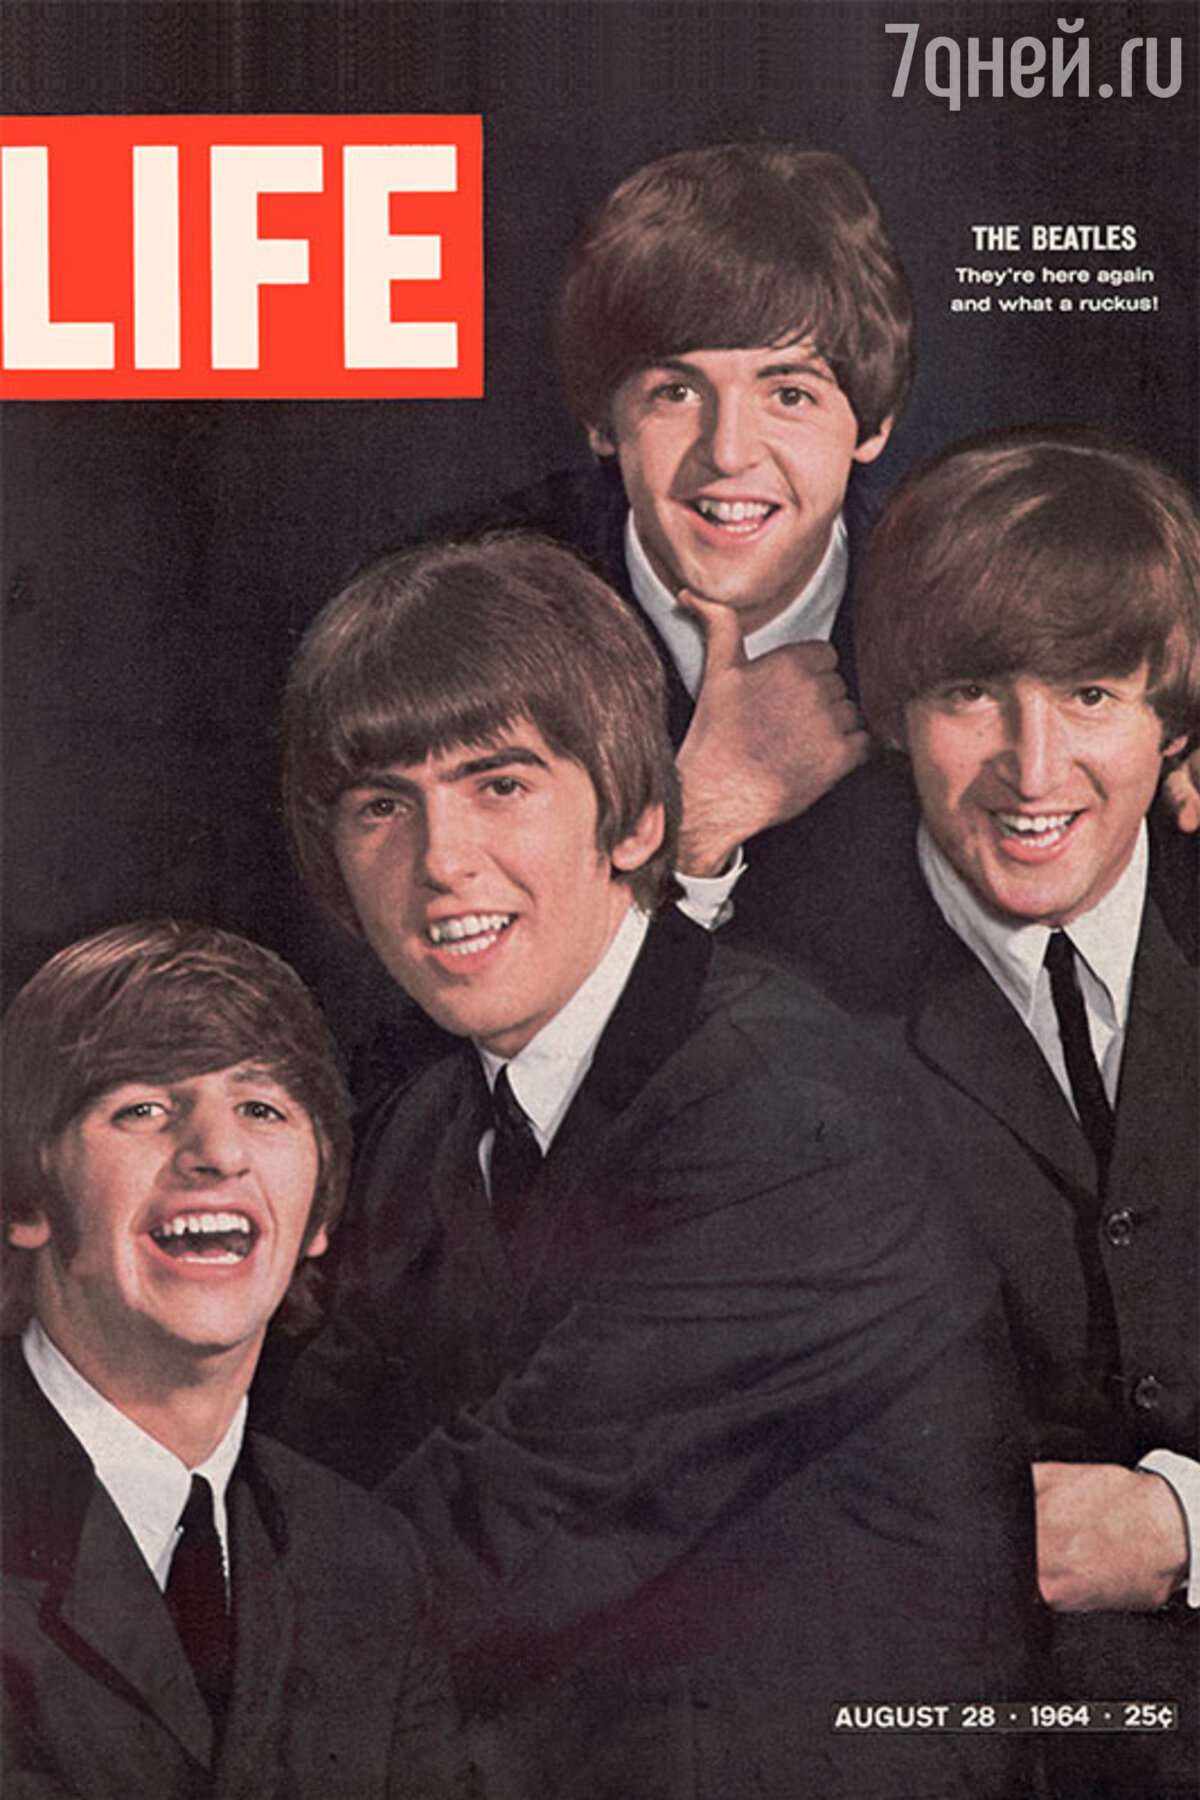 Cover beatles. Группа the Beatles обложка. Битлз 1964. The Beatles в 2013. Битлз на обложке журнала Life.